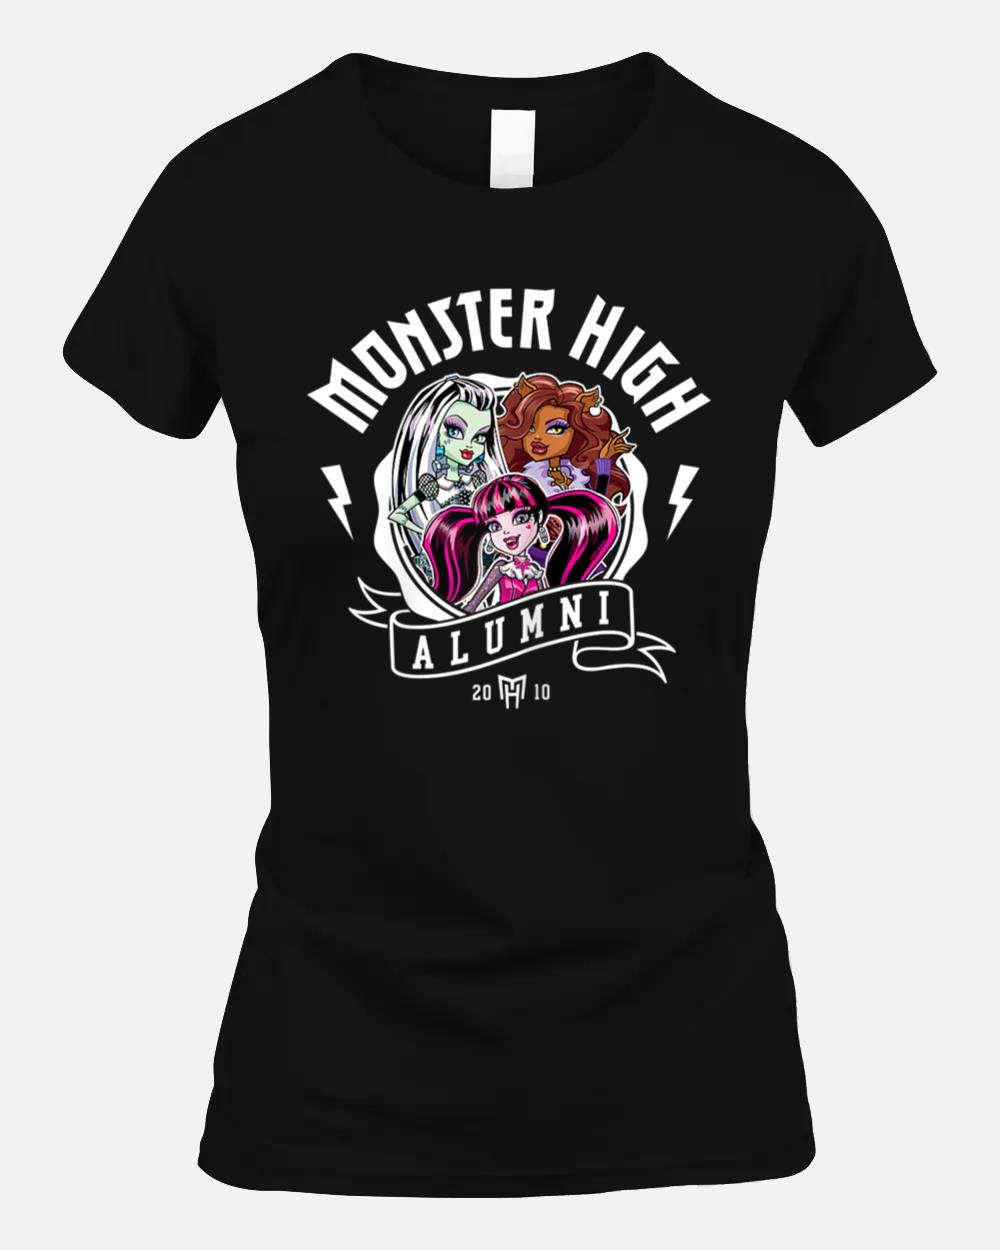 Monster High - Alumni Group Unisex T-Shirt